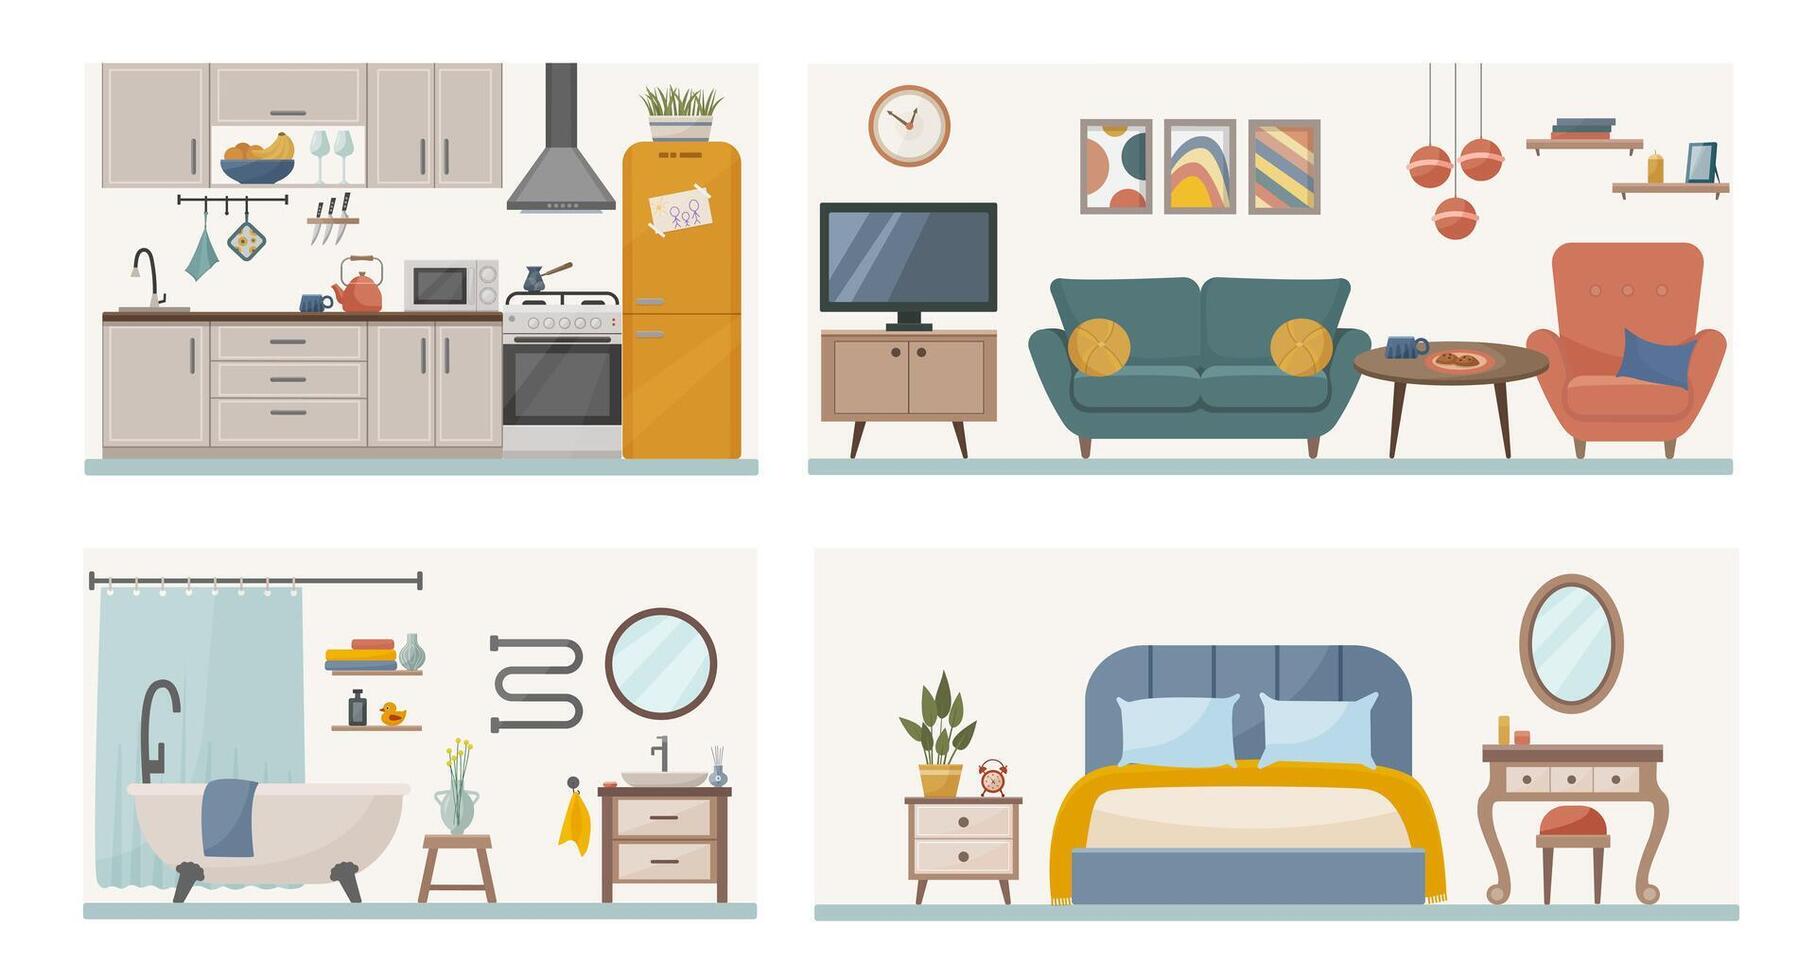 lägenhet inuti. uppsättning med interiörer, badrum, levande rum och sovrum. möblerad rum. platt vektor illustration av rum med möbel.